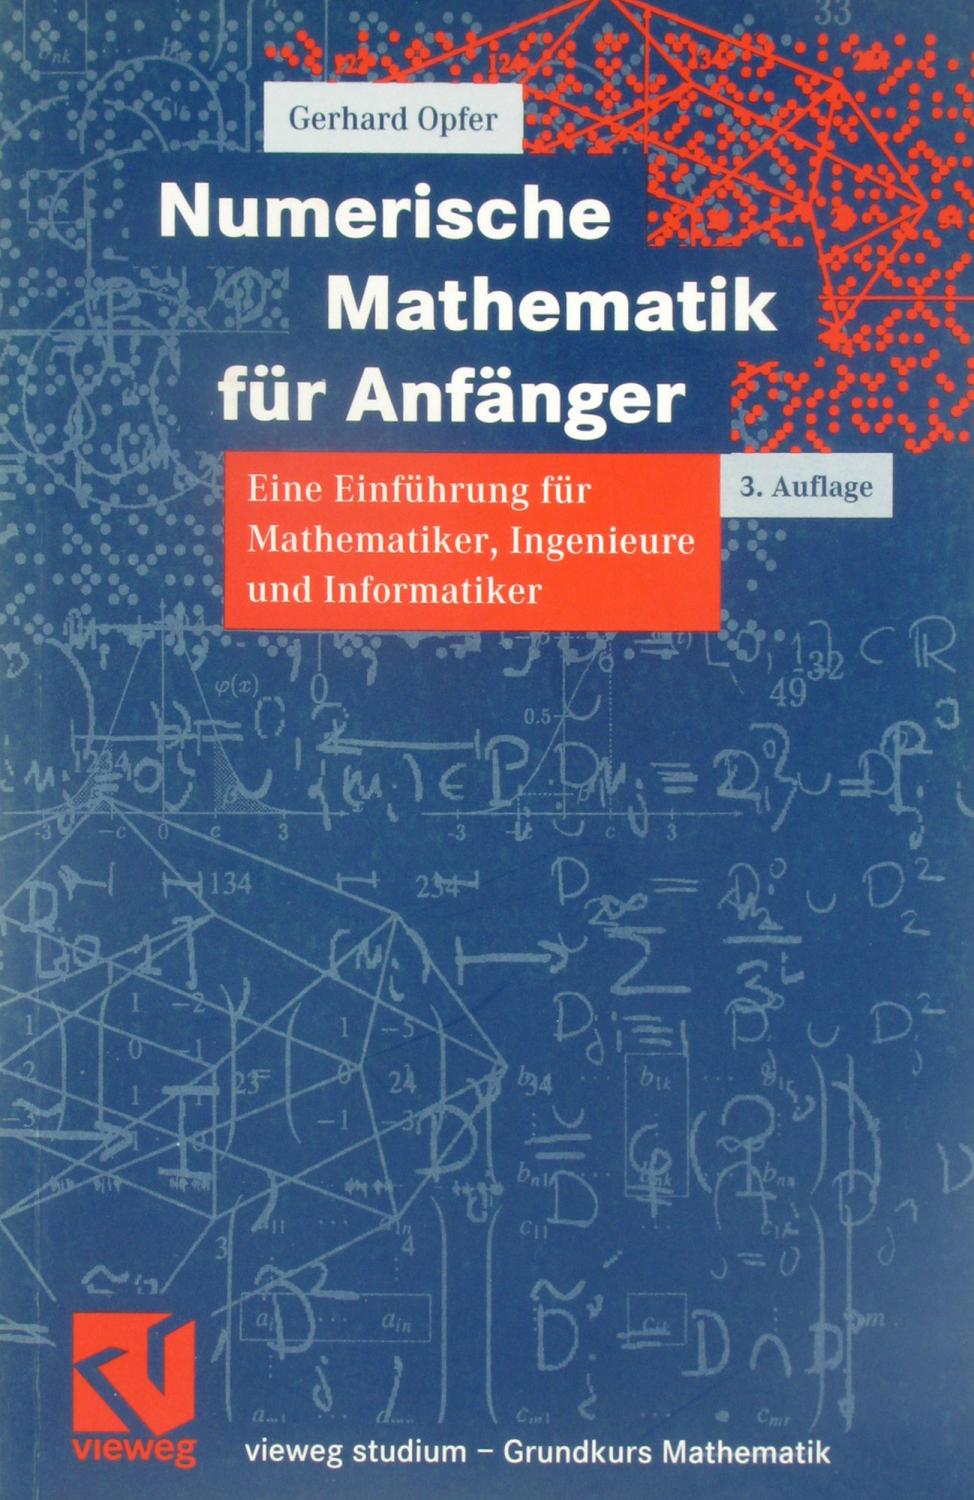 Numerische Mathematik für Anfänger. Eine Einführung für Mathematiker, Ingenieure und Informatiker., - Opfer, Gerhard